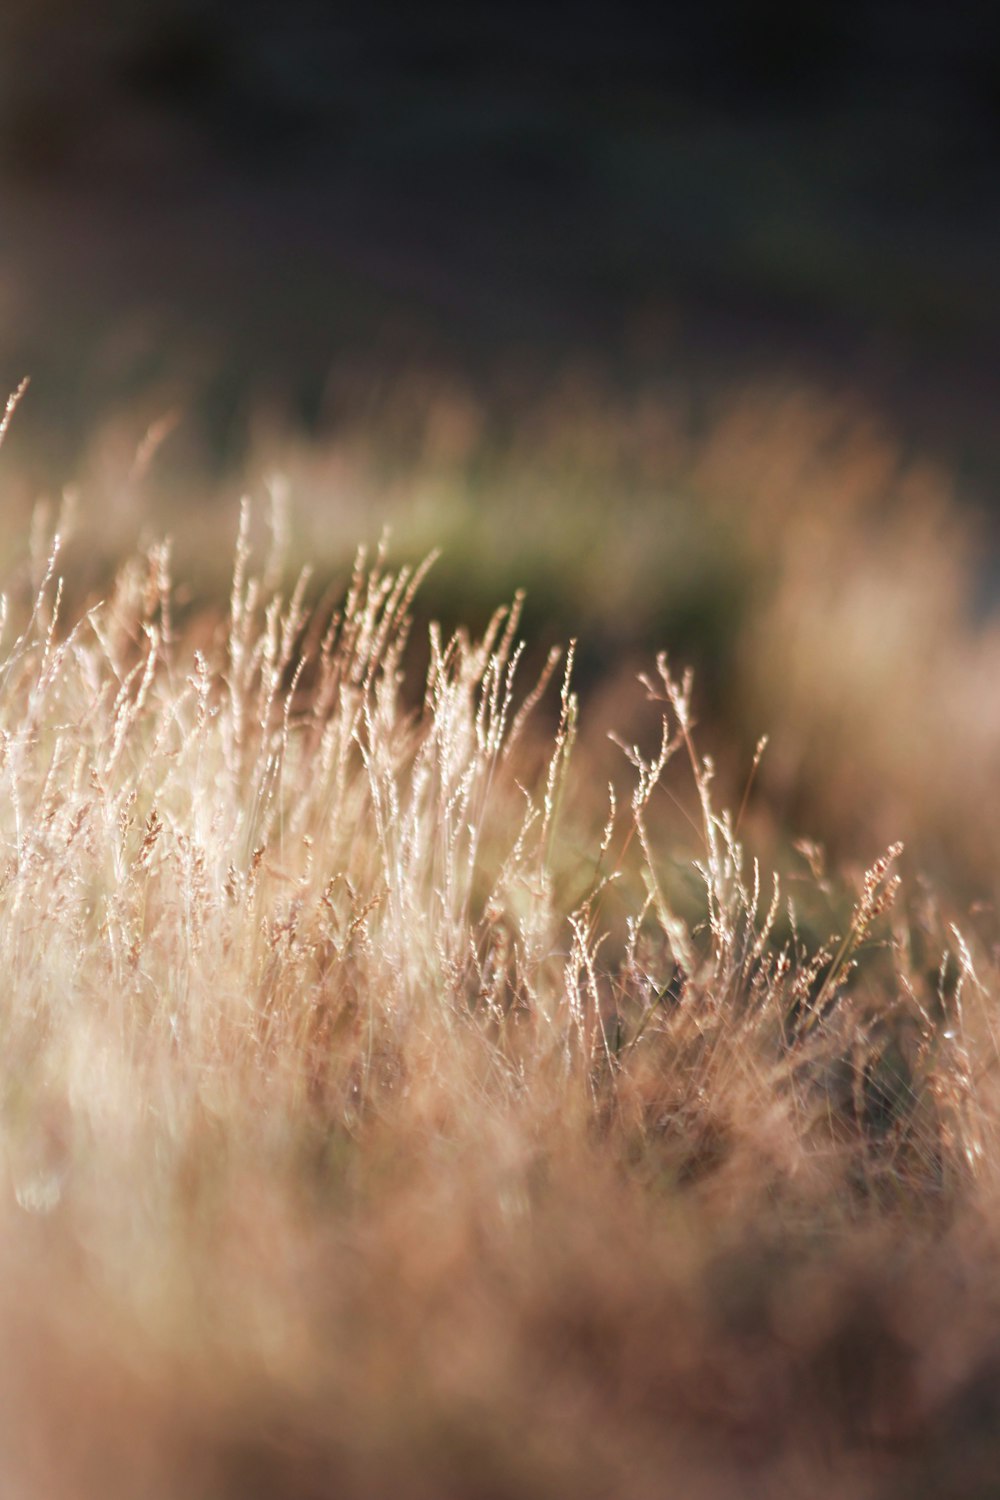 a close up of a grass field